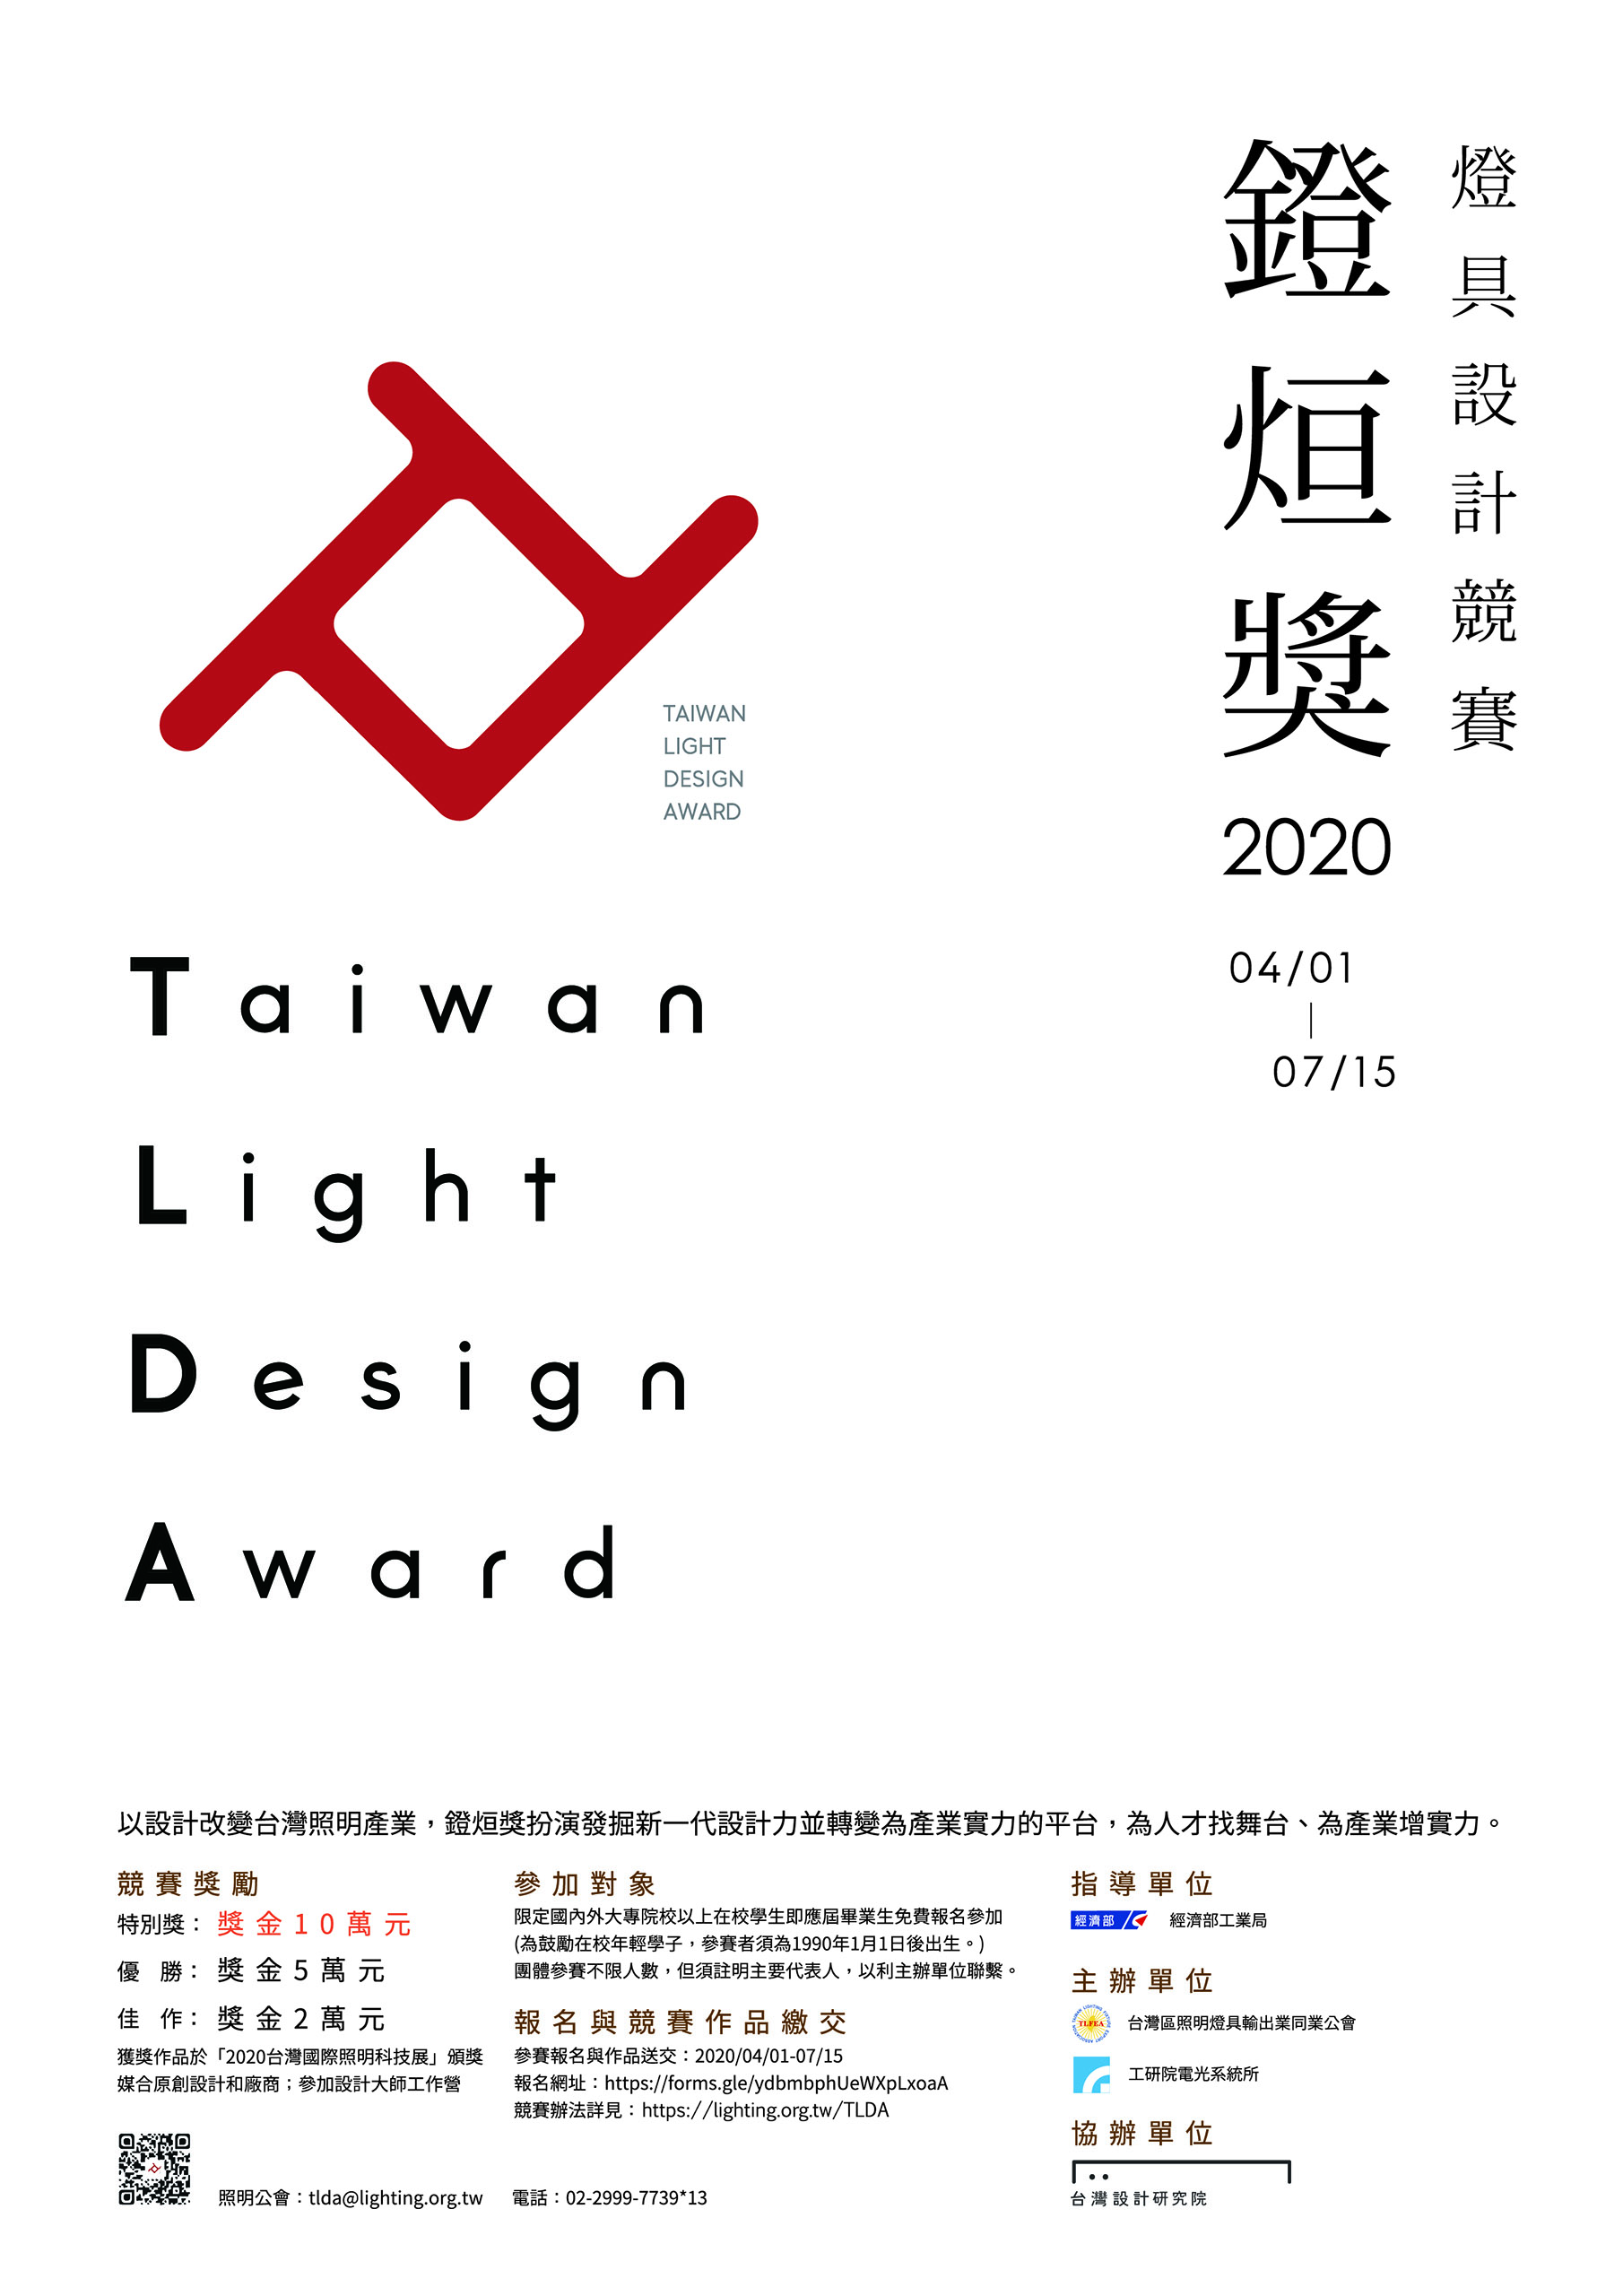 2020年「鐙烜獎」LED創意燈具設計競賽 宣傳海報